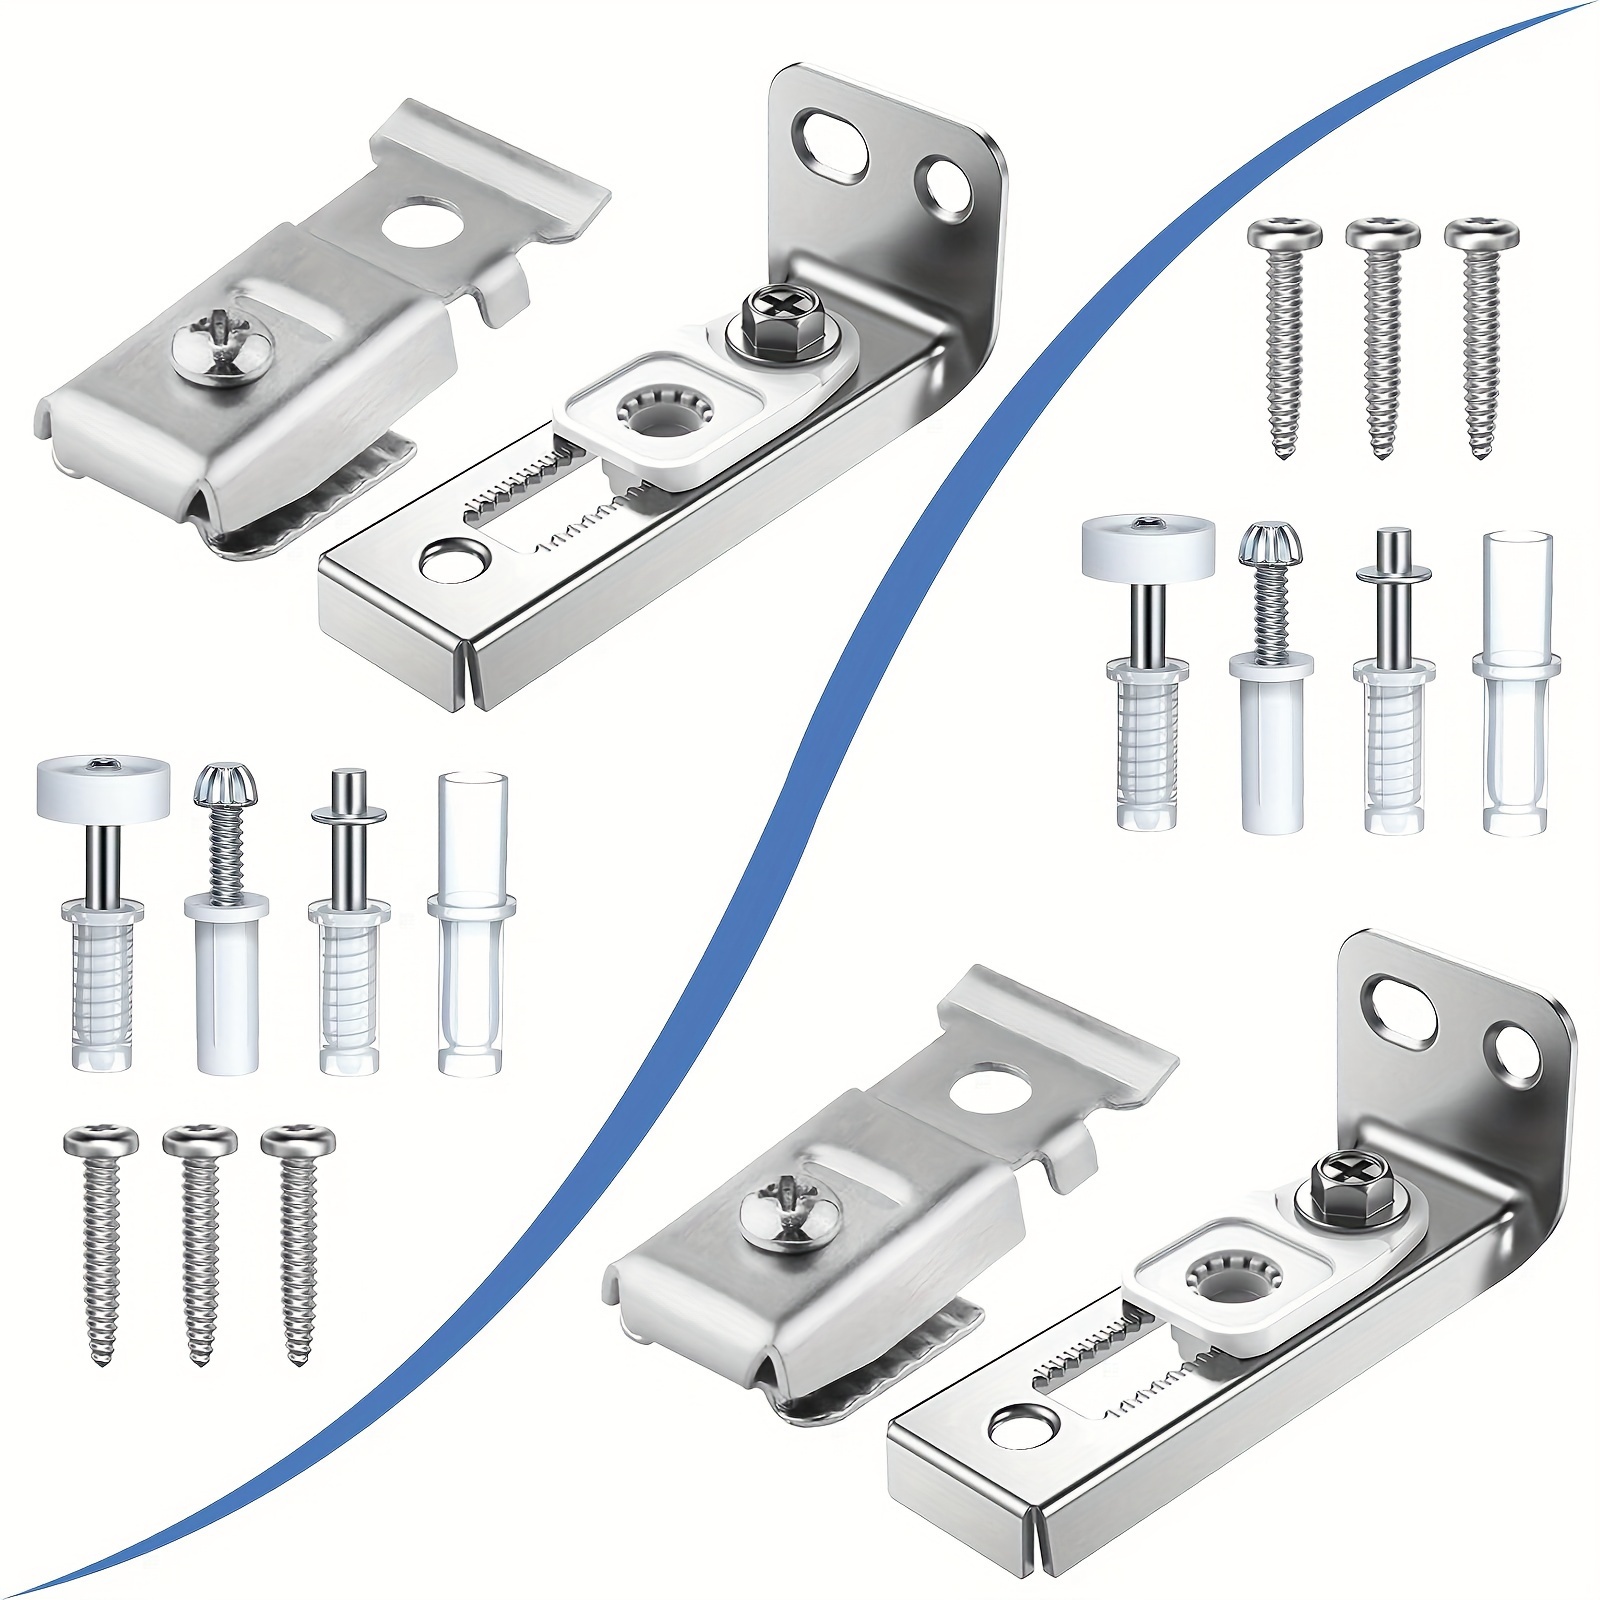 Kit de reparación de herrajes para puertas plegables – 4 paquetes de piezas  de repuesto para puertas correderas de armario plegables que incluyen